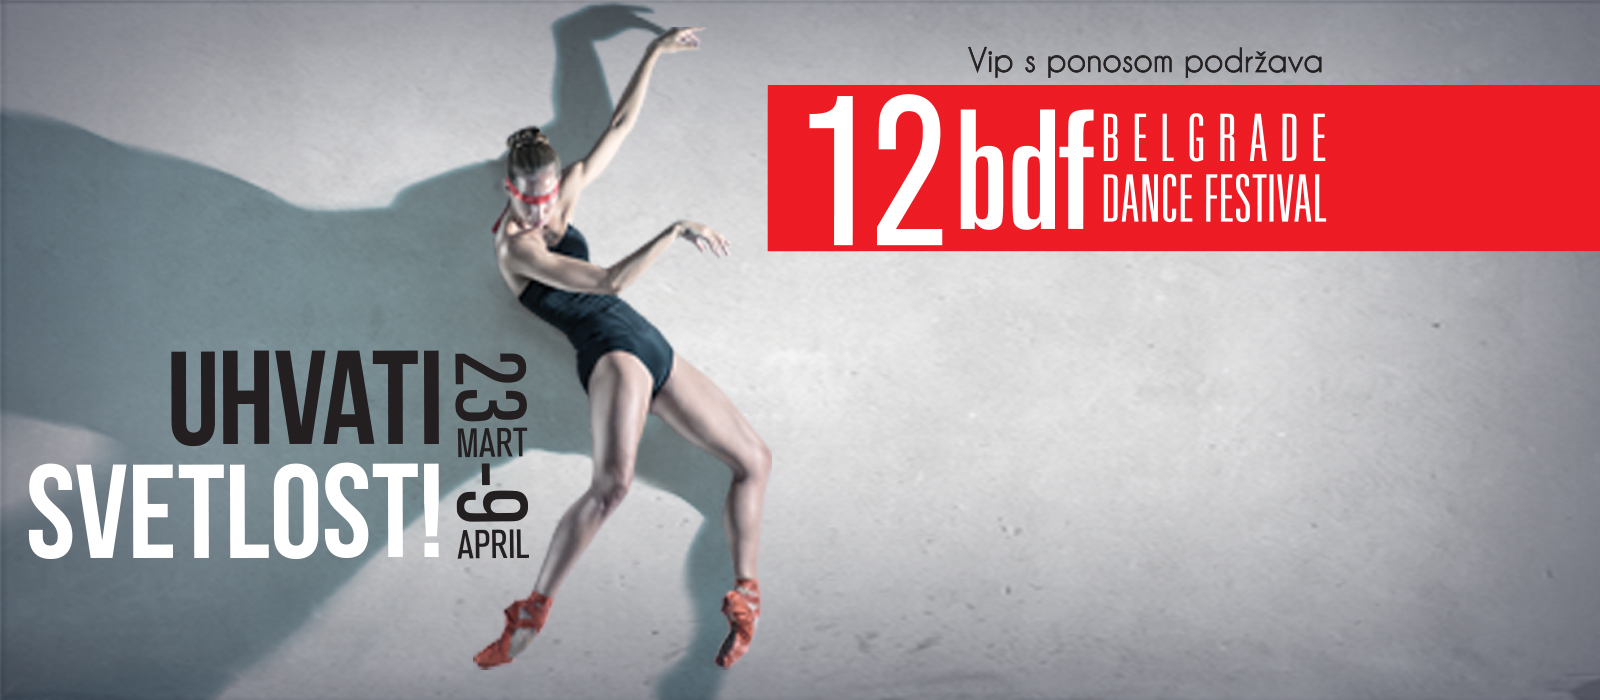 Beograd od 19. marta do 10. aprila baletska prestonica sveta